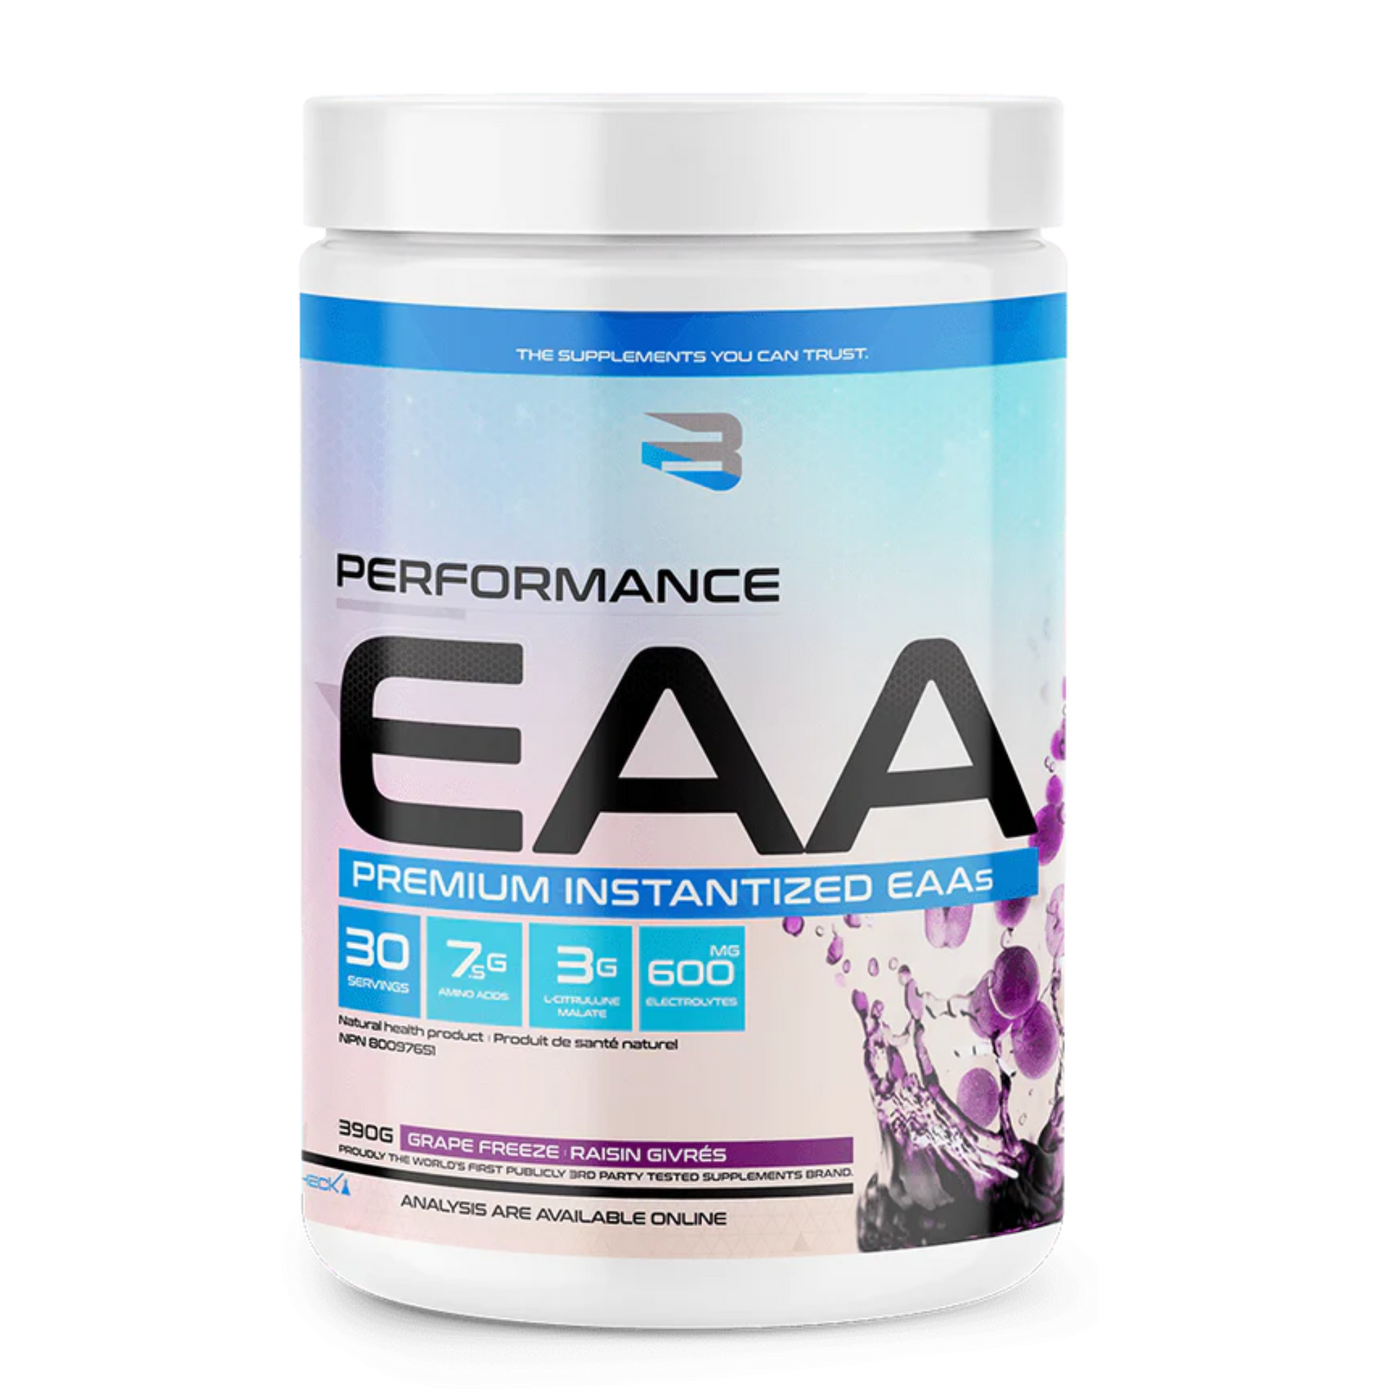 Performance EAA - Believe Supplements